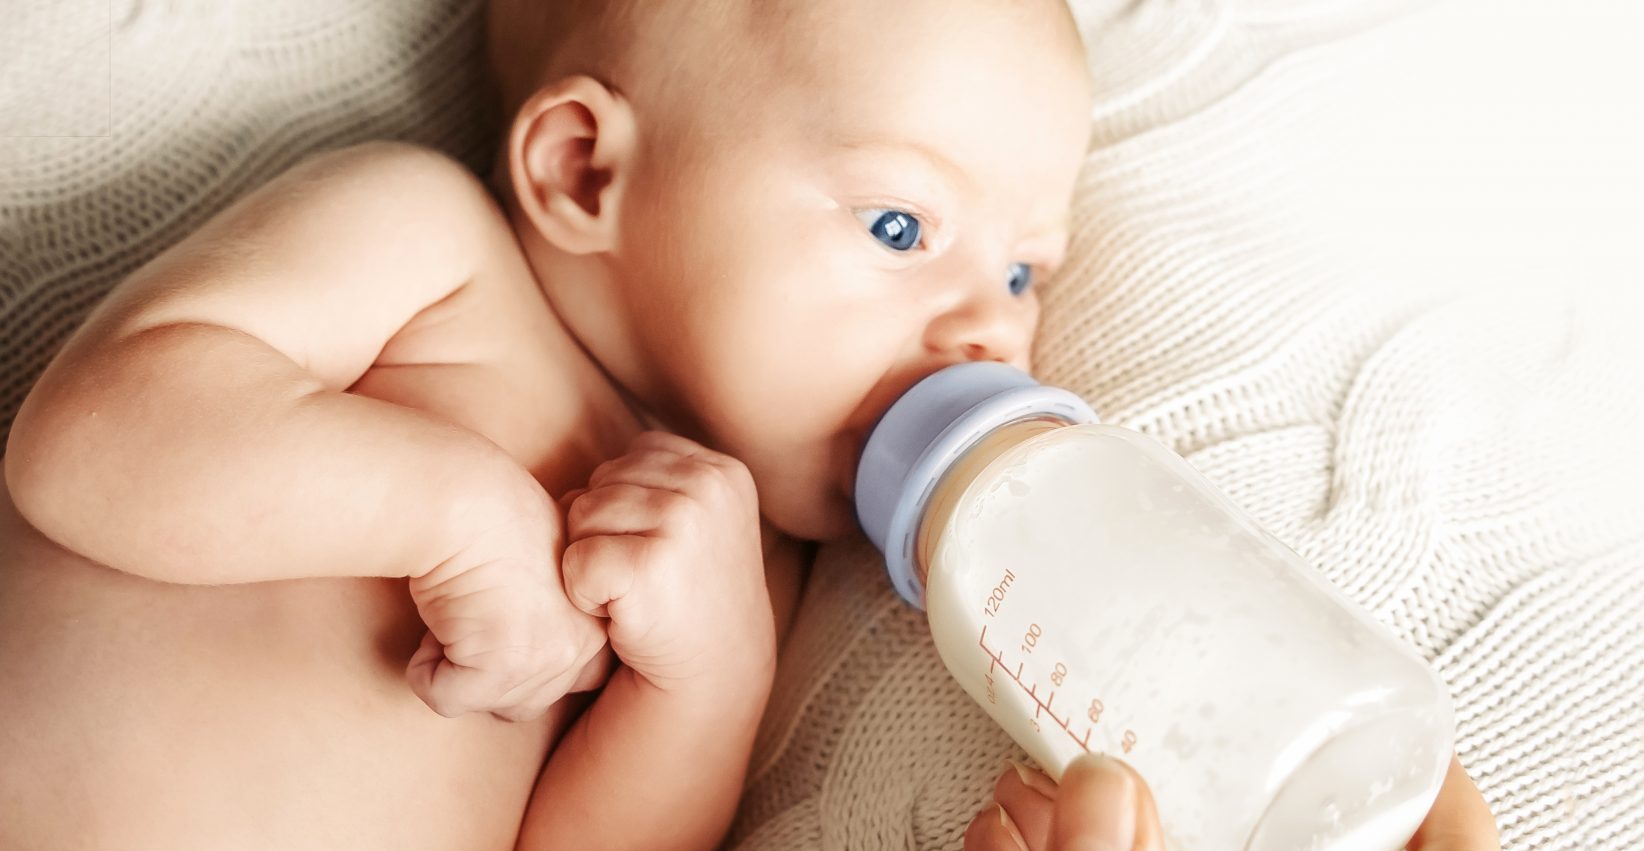 Sostituti del latte materno, al via le domande per i rimborsi spese